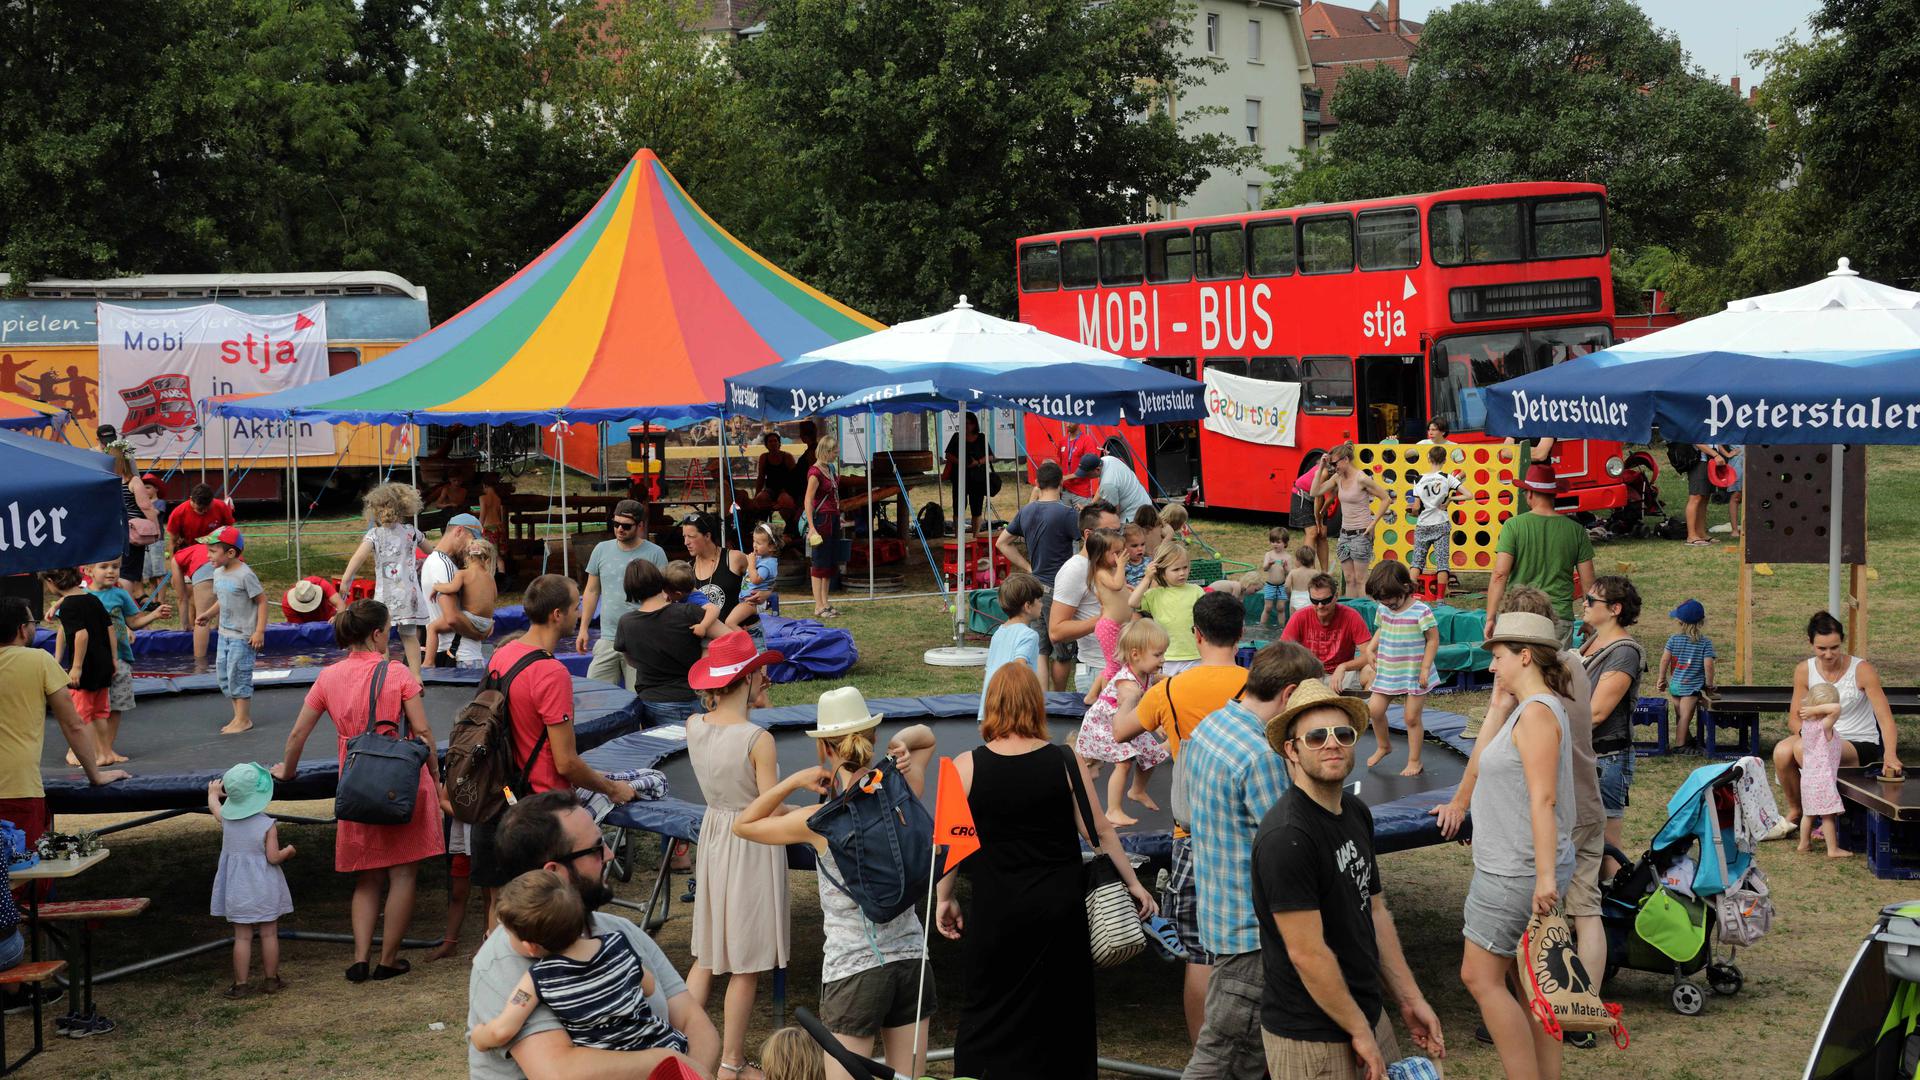 Der rote Mobibus ist für die kleinsten der Festivalbesucher häufig erste Anlaufstelle. Foto: Joerg Donecker